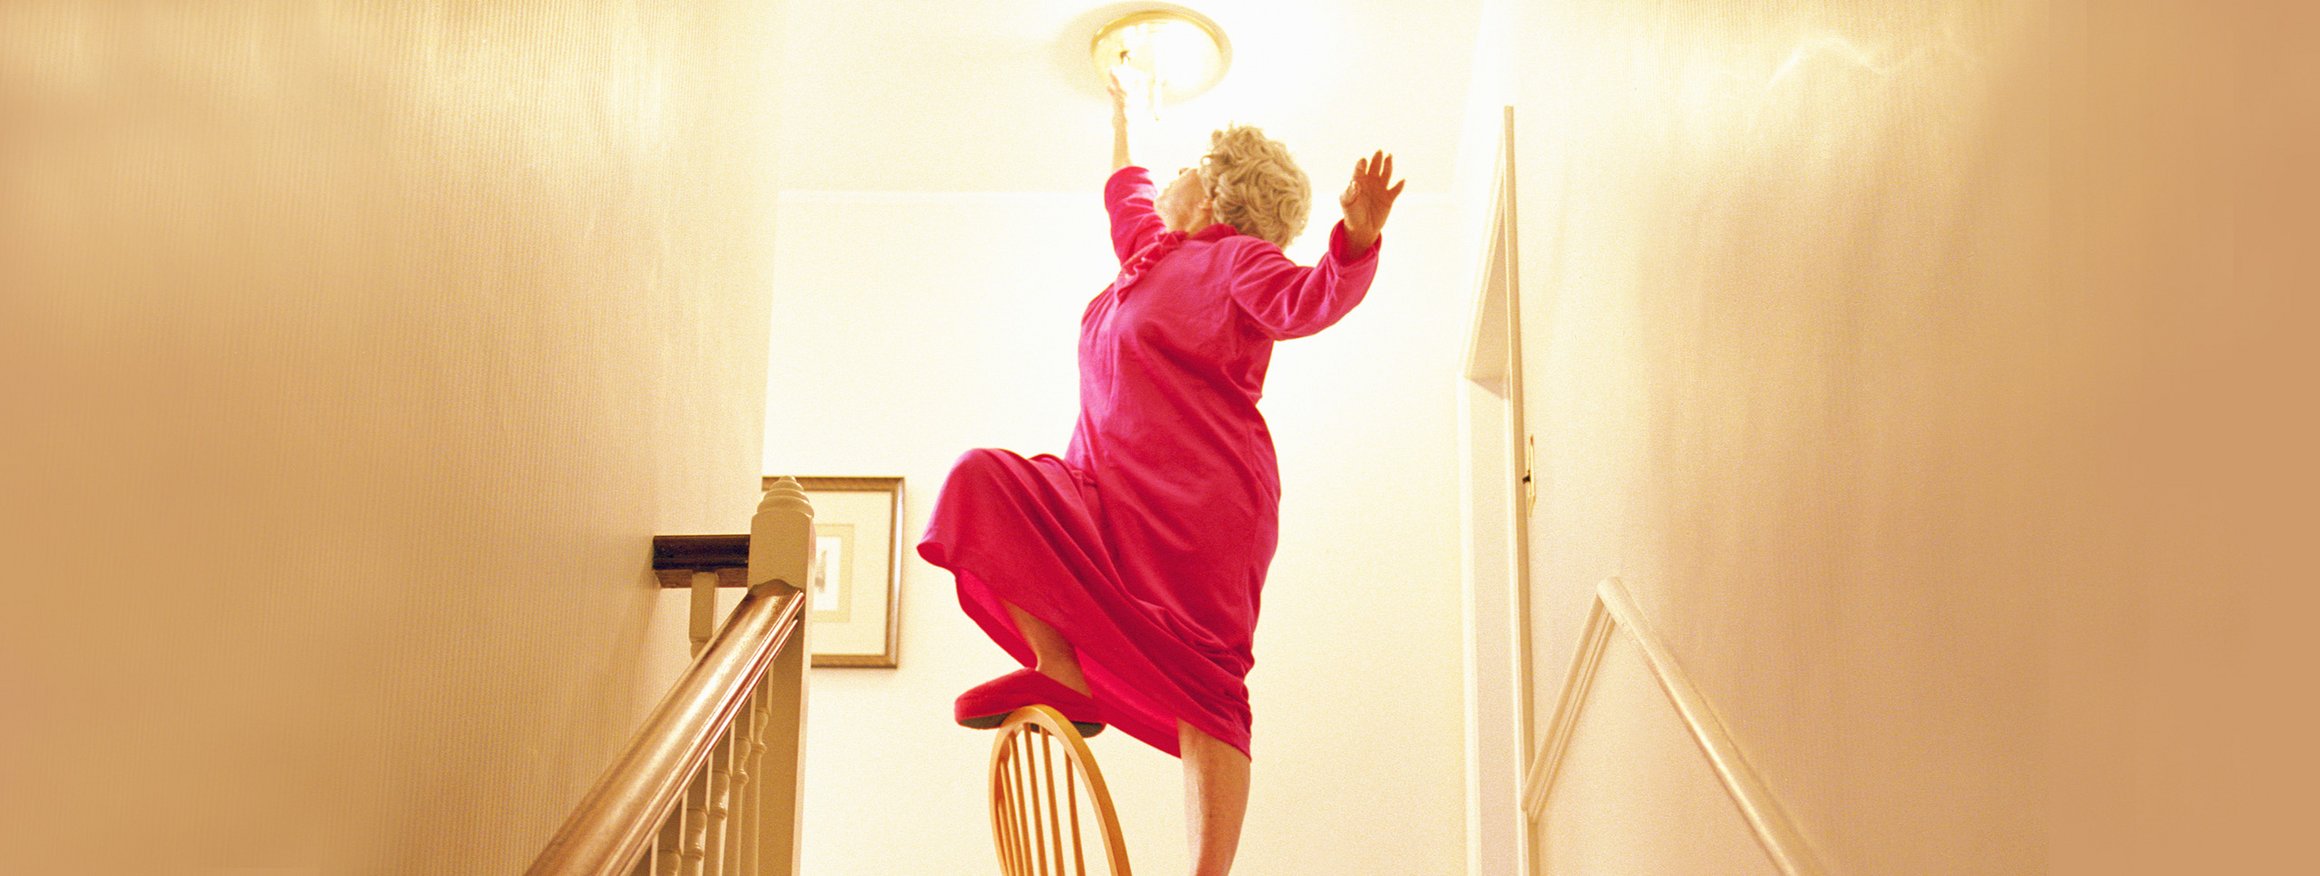 Ältere Frau balanciert auf einem Stuhl und wechselt eine Glühbirne